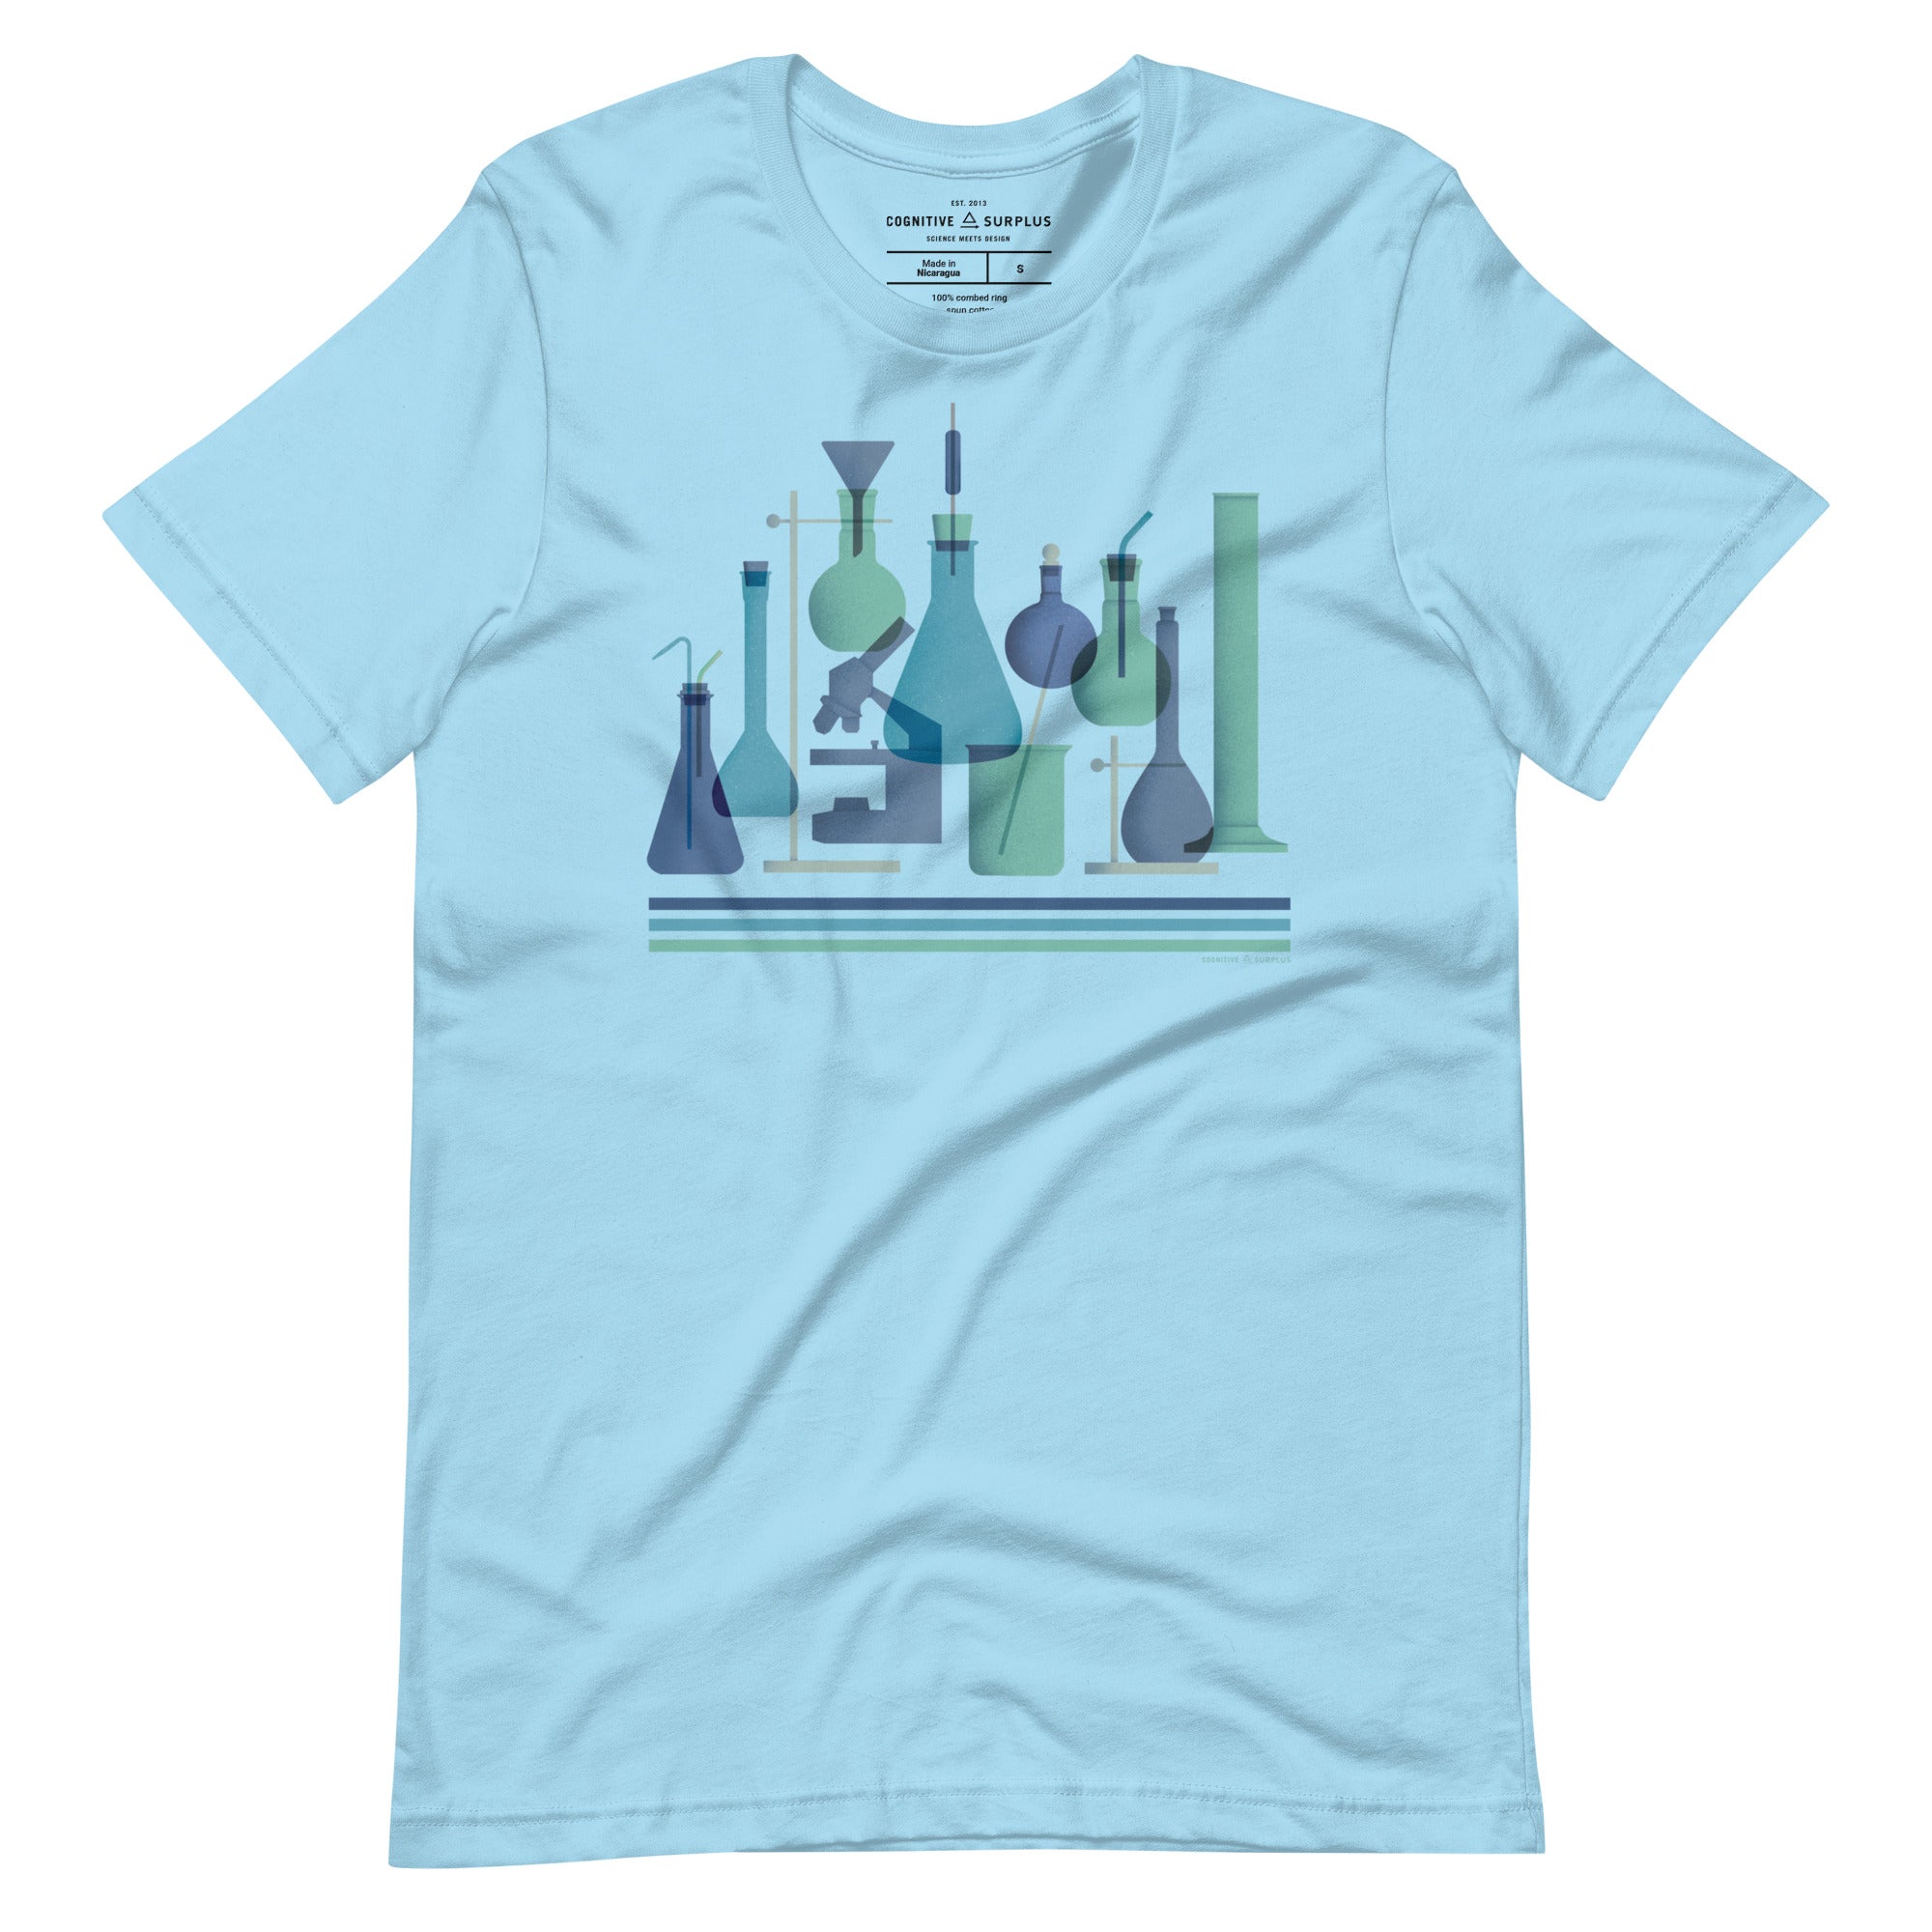 unisex-staple-t-shirt-ocean-blue-front-654a65b329fd4.jpg